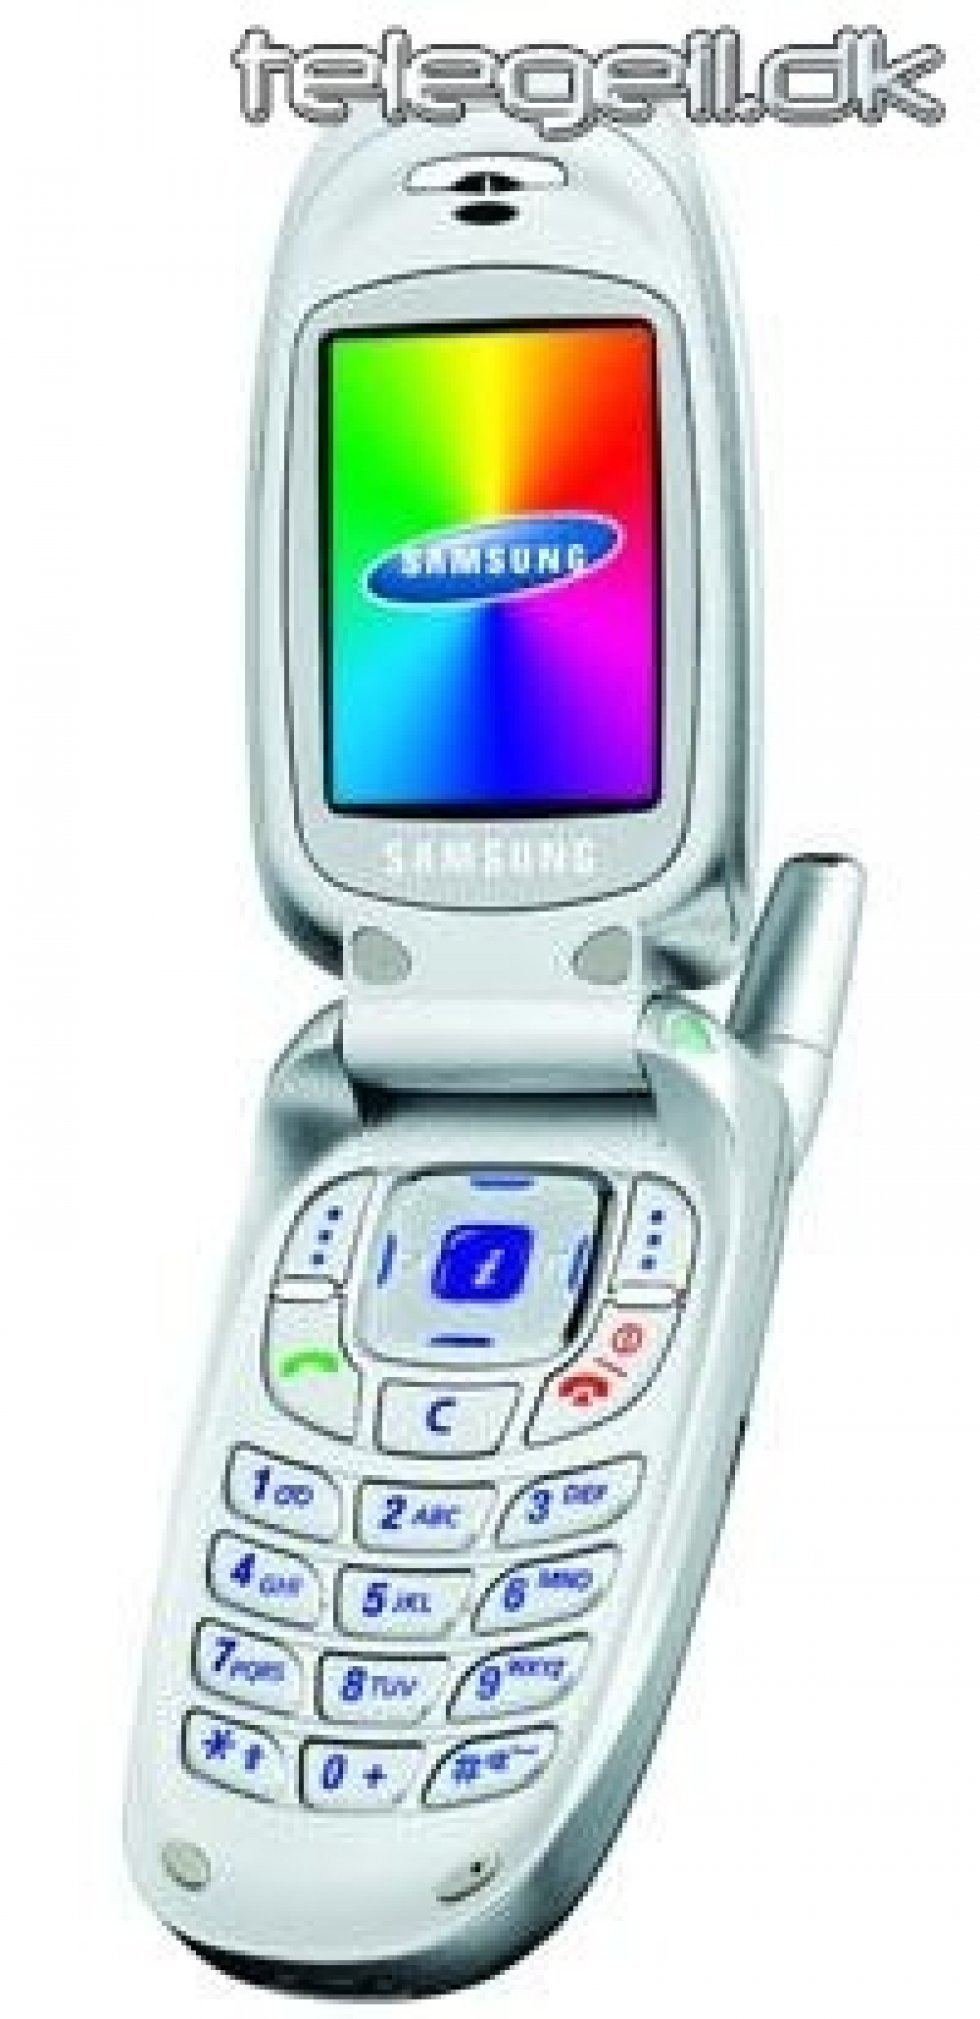 Samsung SGH-X450